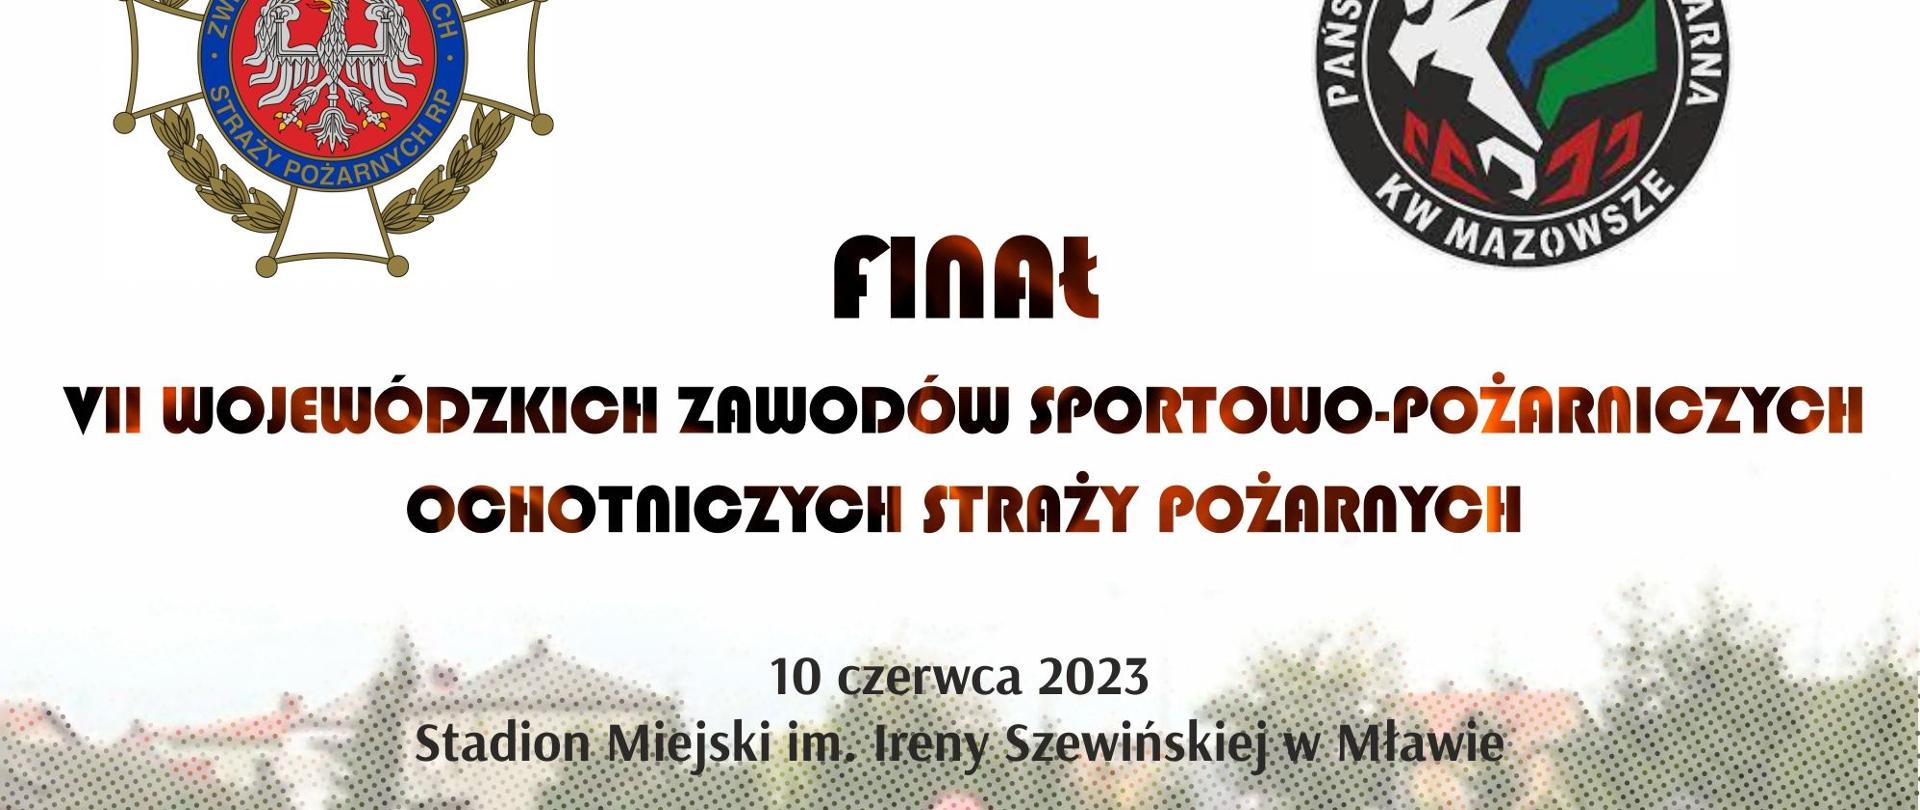 Plakat informacyjny "Finał VII Wojewódzkich Zawodów Sportowo-Pożarniczych Ochotniczych Straży Pożarnych"